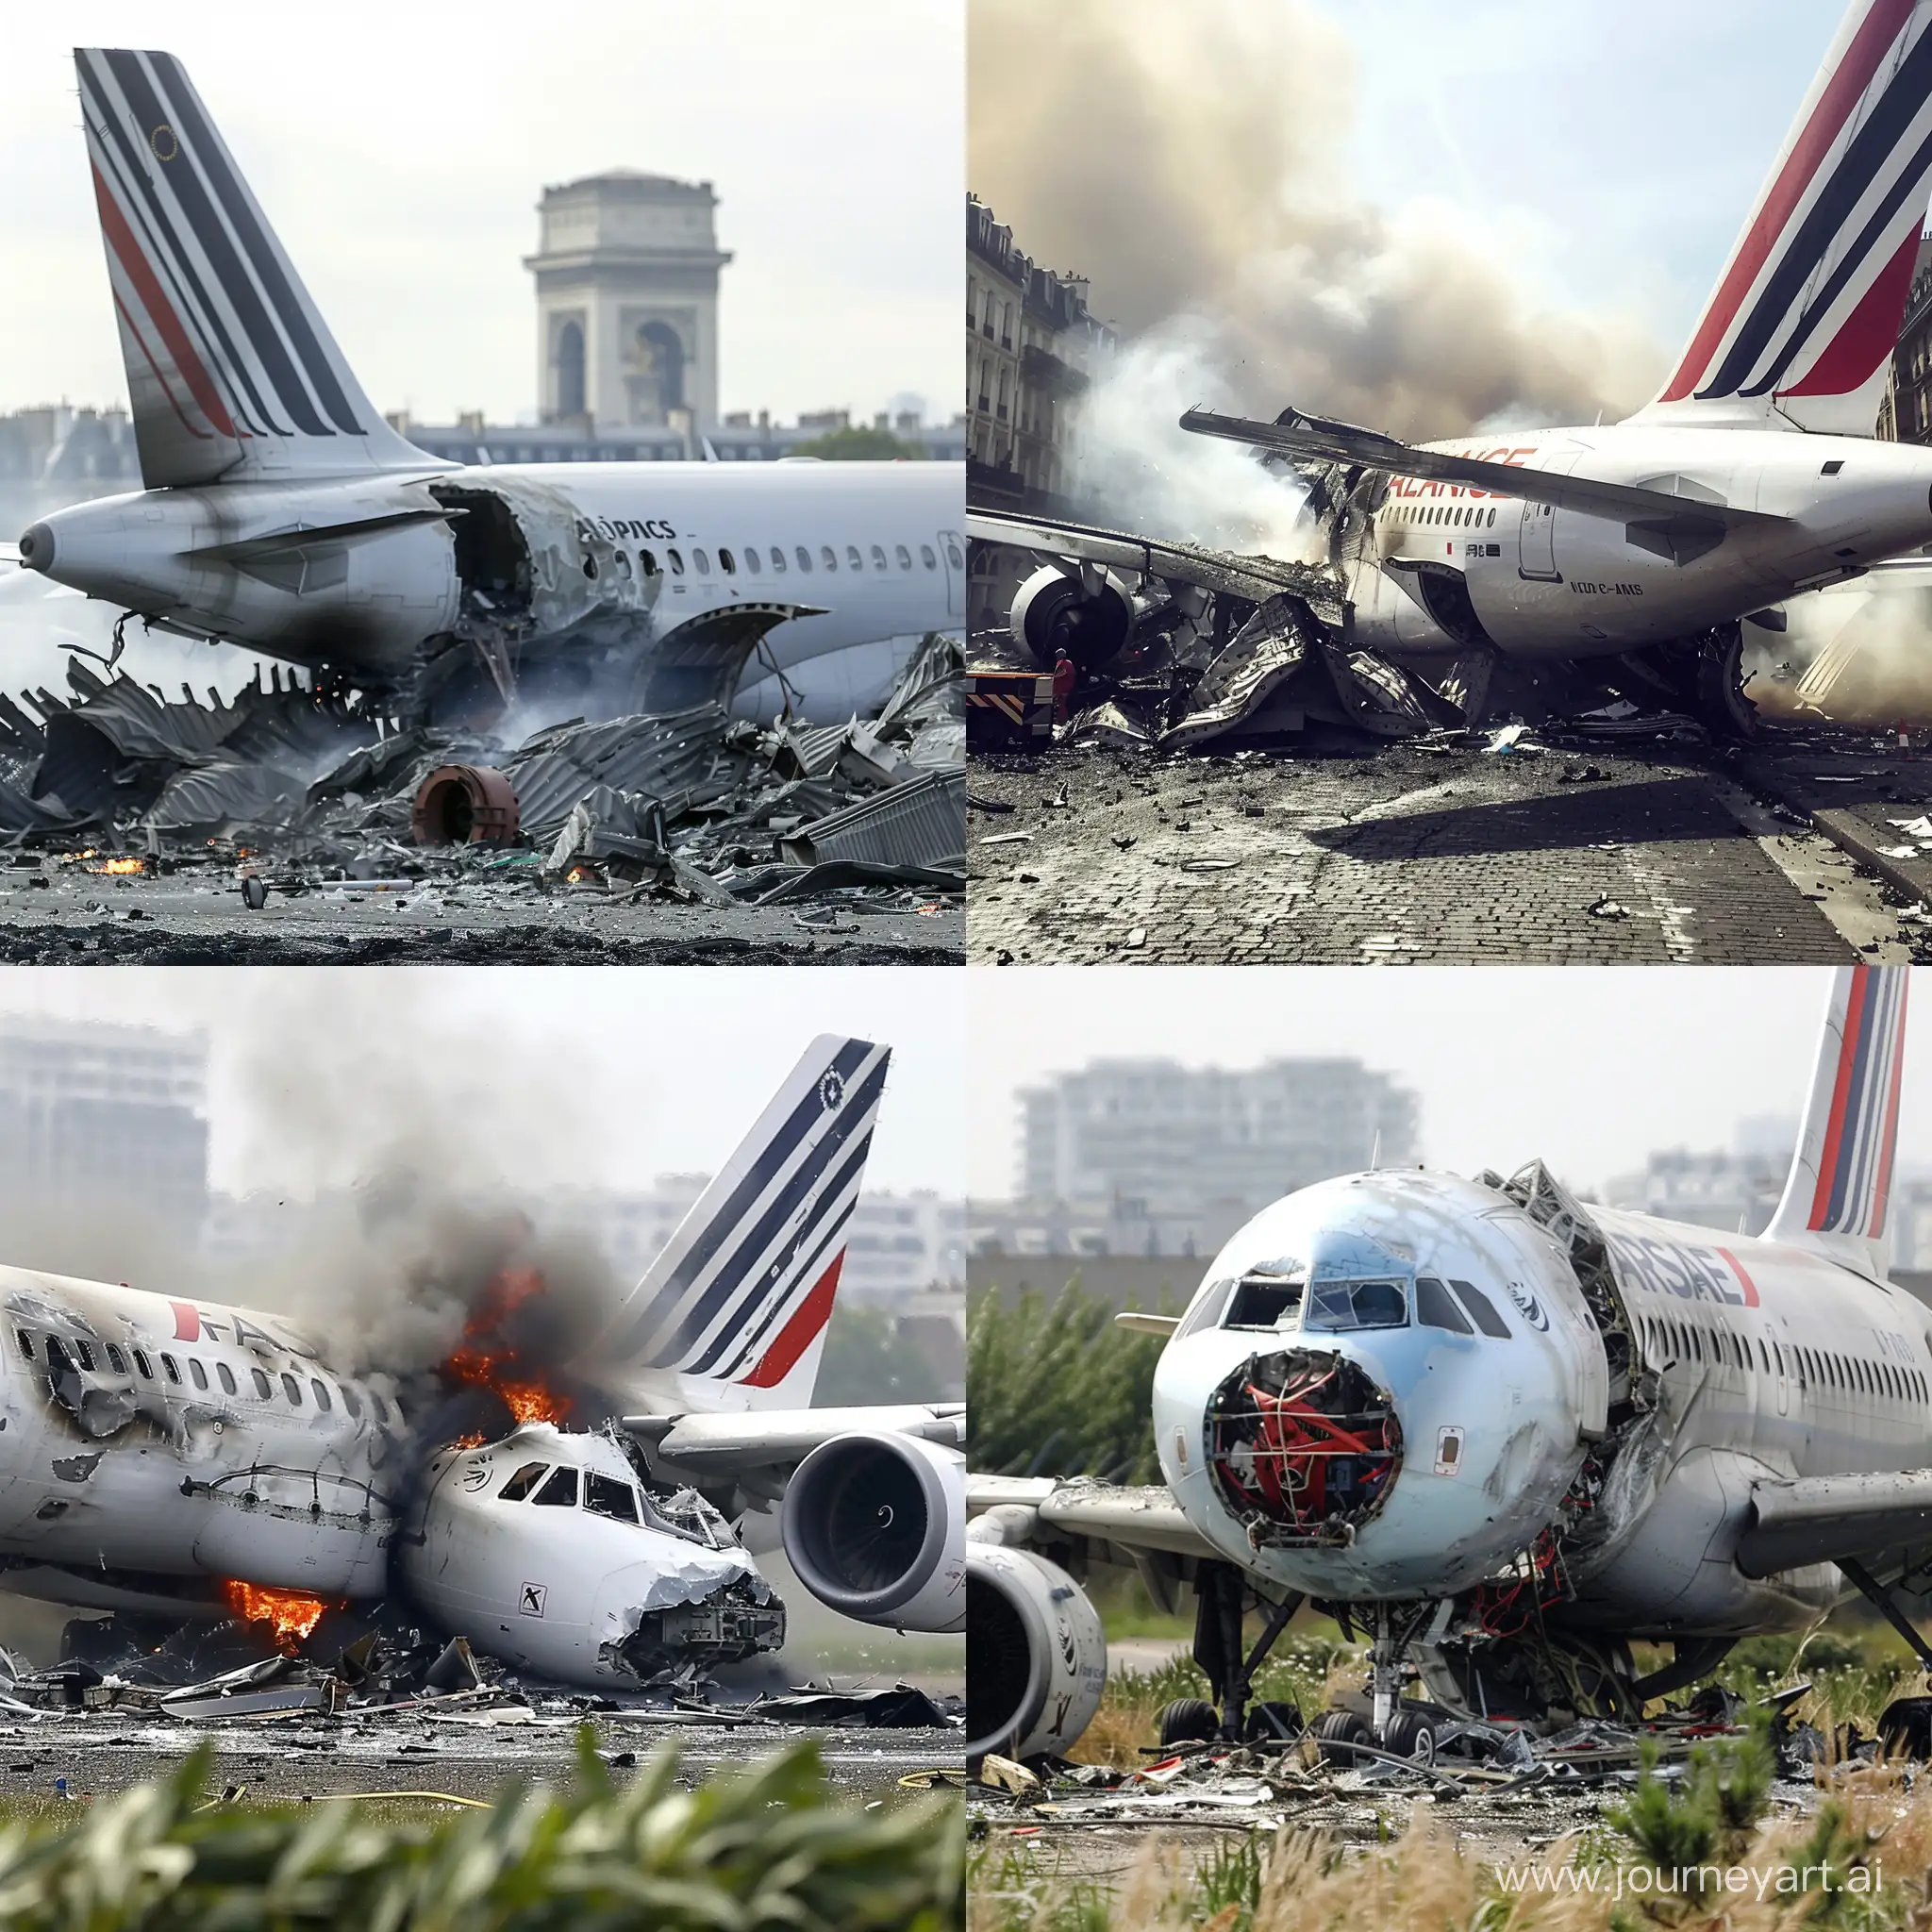 le crash d'un avion à plein paris